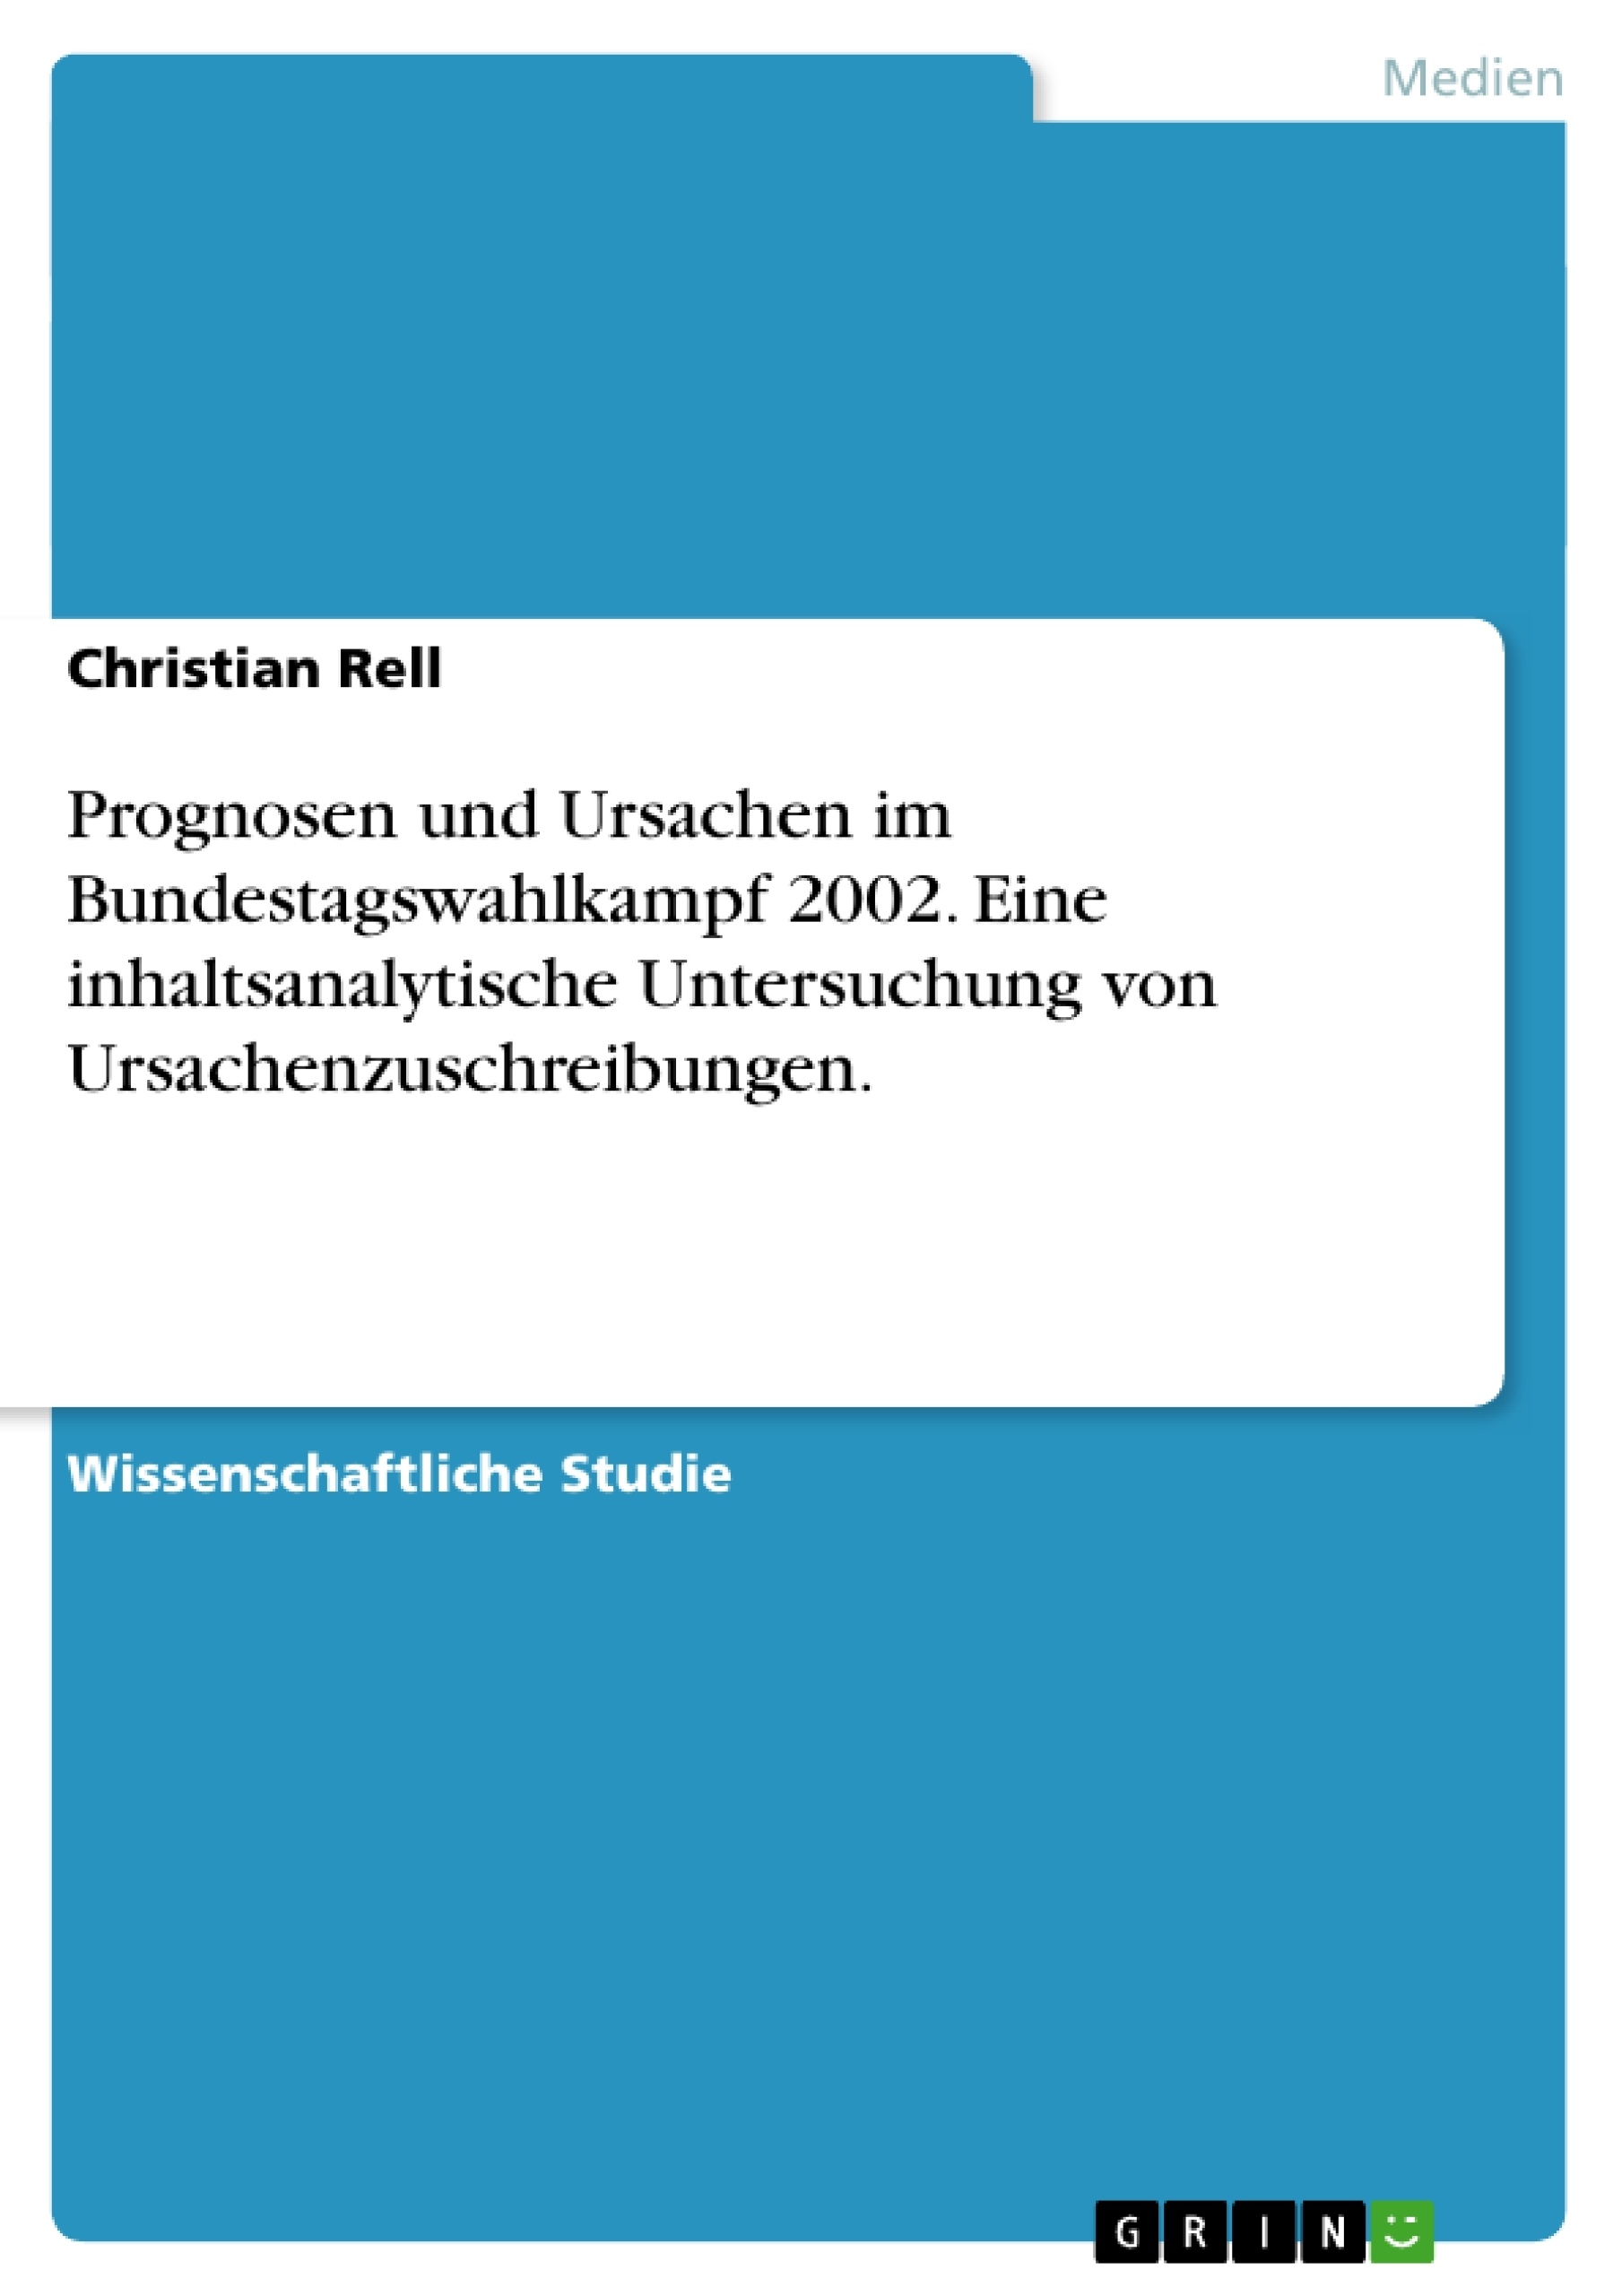 Title: Prognosen und Ursachen im Bundestagswahlkampf 2002. Eine inhaltsanalytische Untersuchung von Ursachenzuschreibungen.